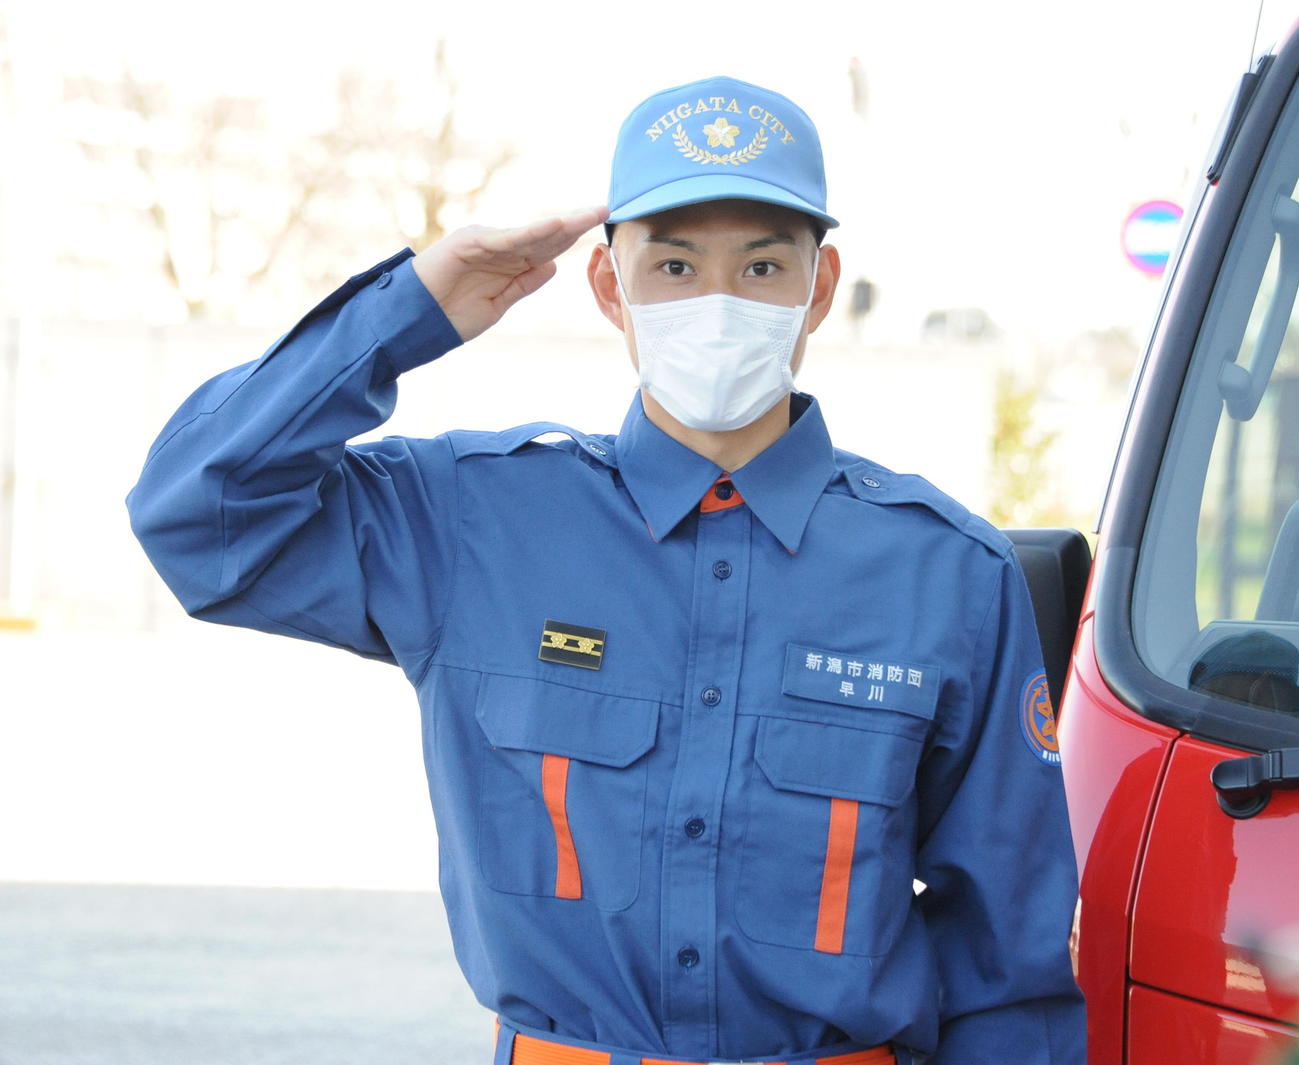 「1日消防団員」に任命された早川が消防車の前で敬礼ポーズ